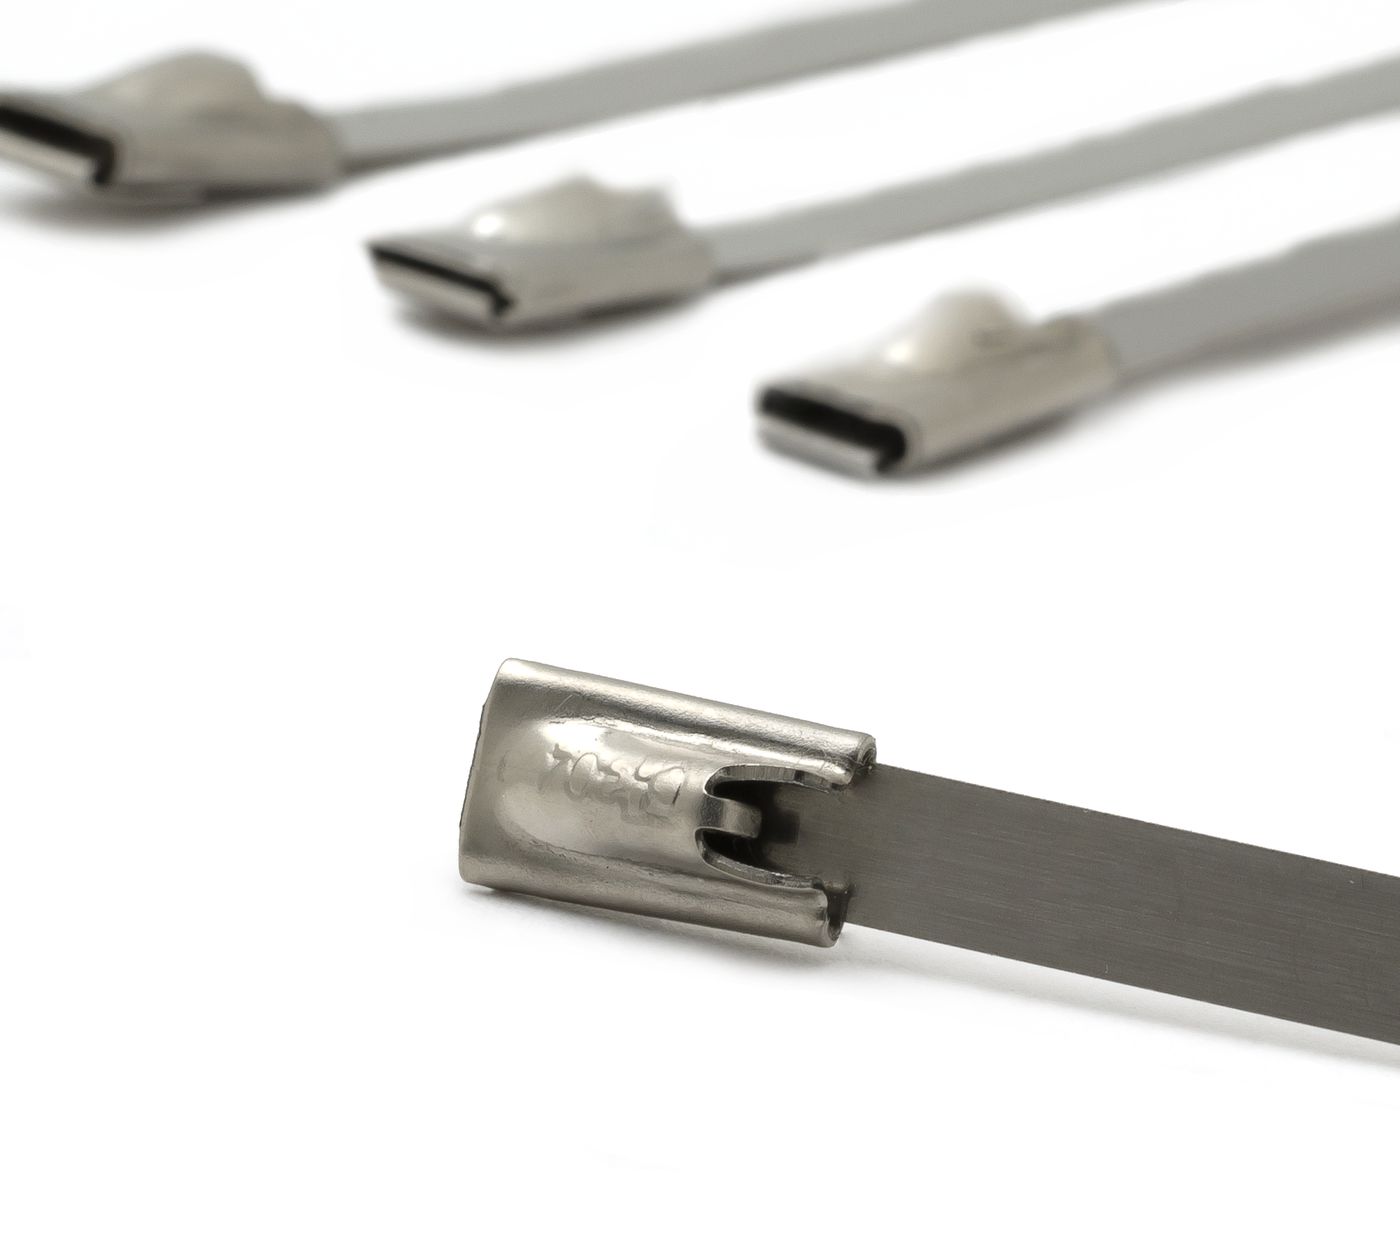 Kabelbinder
Cable strap
Collier de câble
Tirante de cables
Fasc